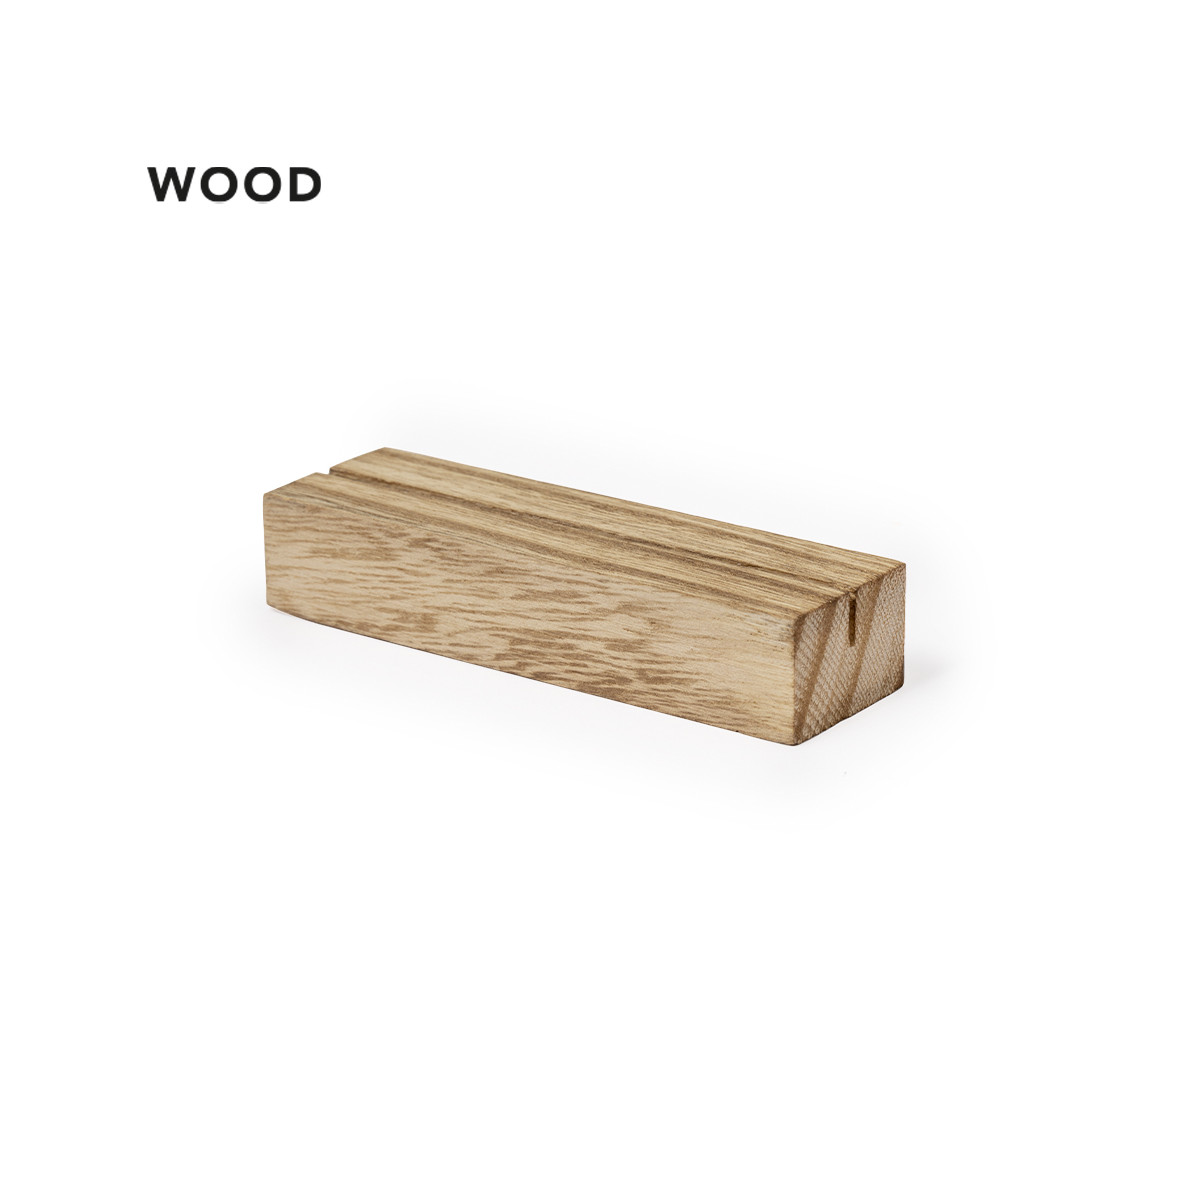 Soporte de madera rústica portatarjetas para minutas para eventos - Soporte Keil